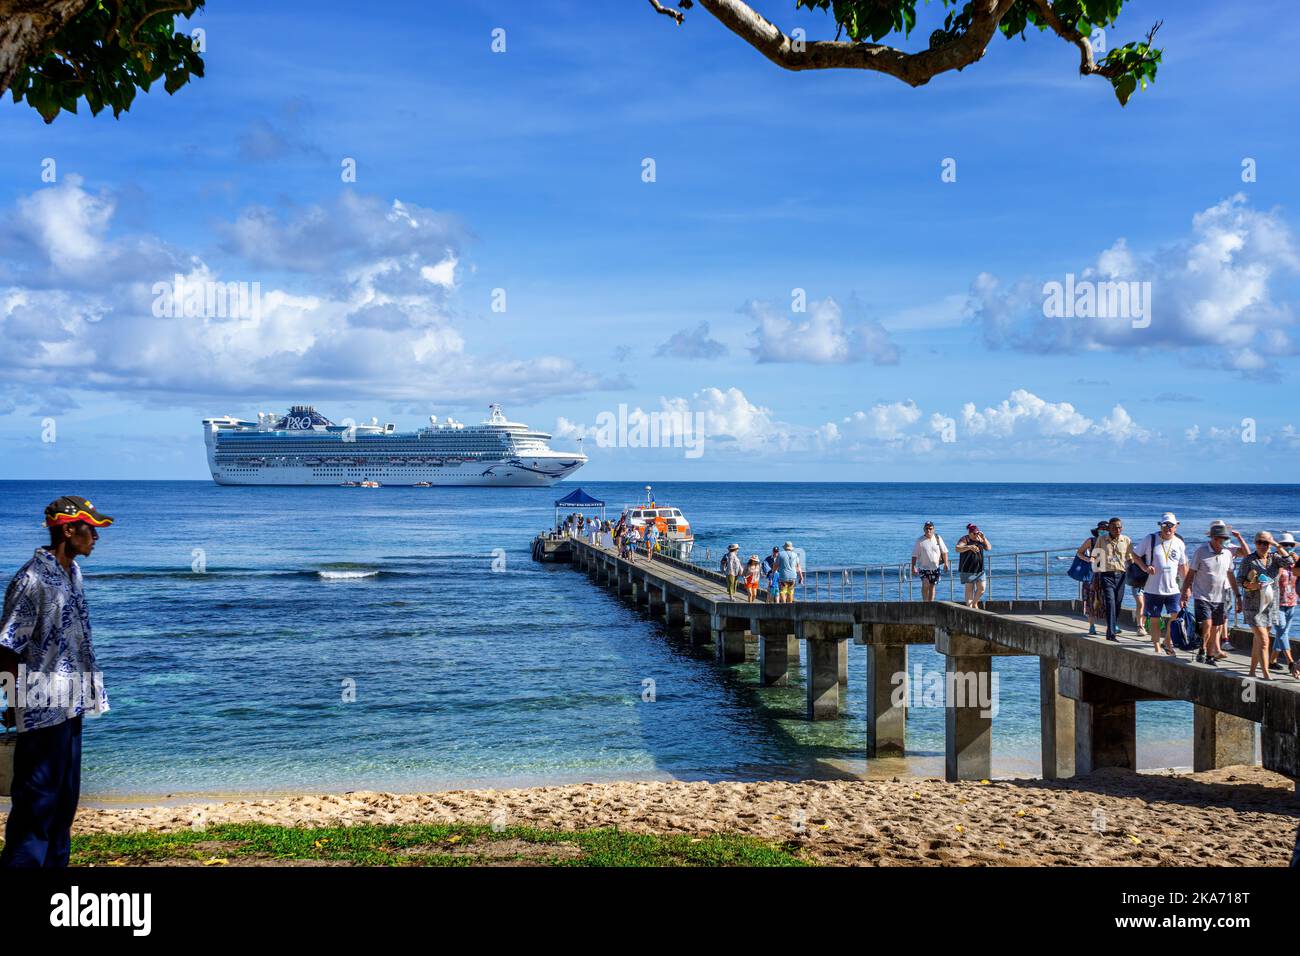 Passagiere, die durch kleine Ausschreibungen des vor Kiriwina Island, Papua-Neuguinea verankerten Kreuzfahrtschiffes an den Anlegesteg gebracht werden Stockfoto